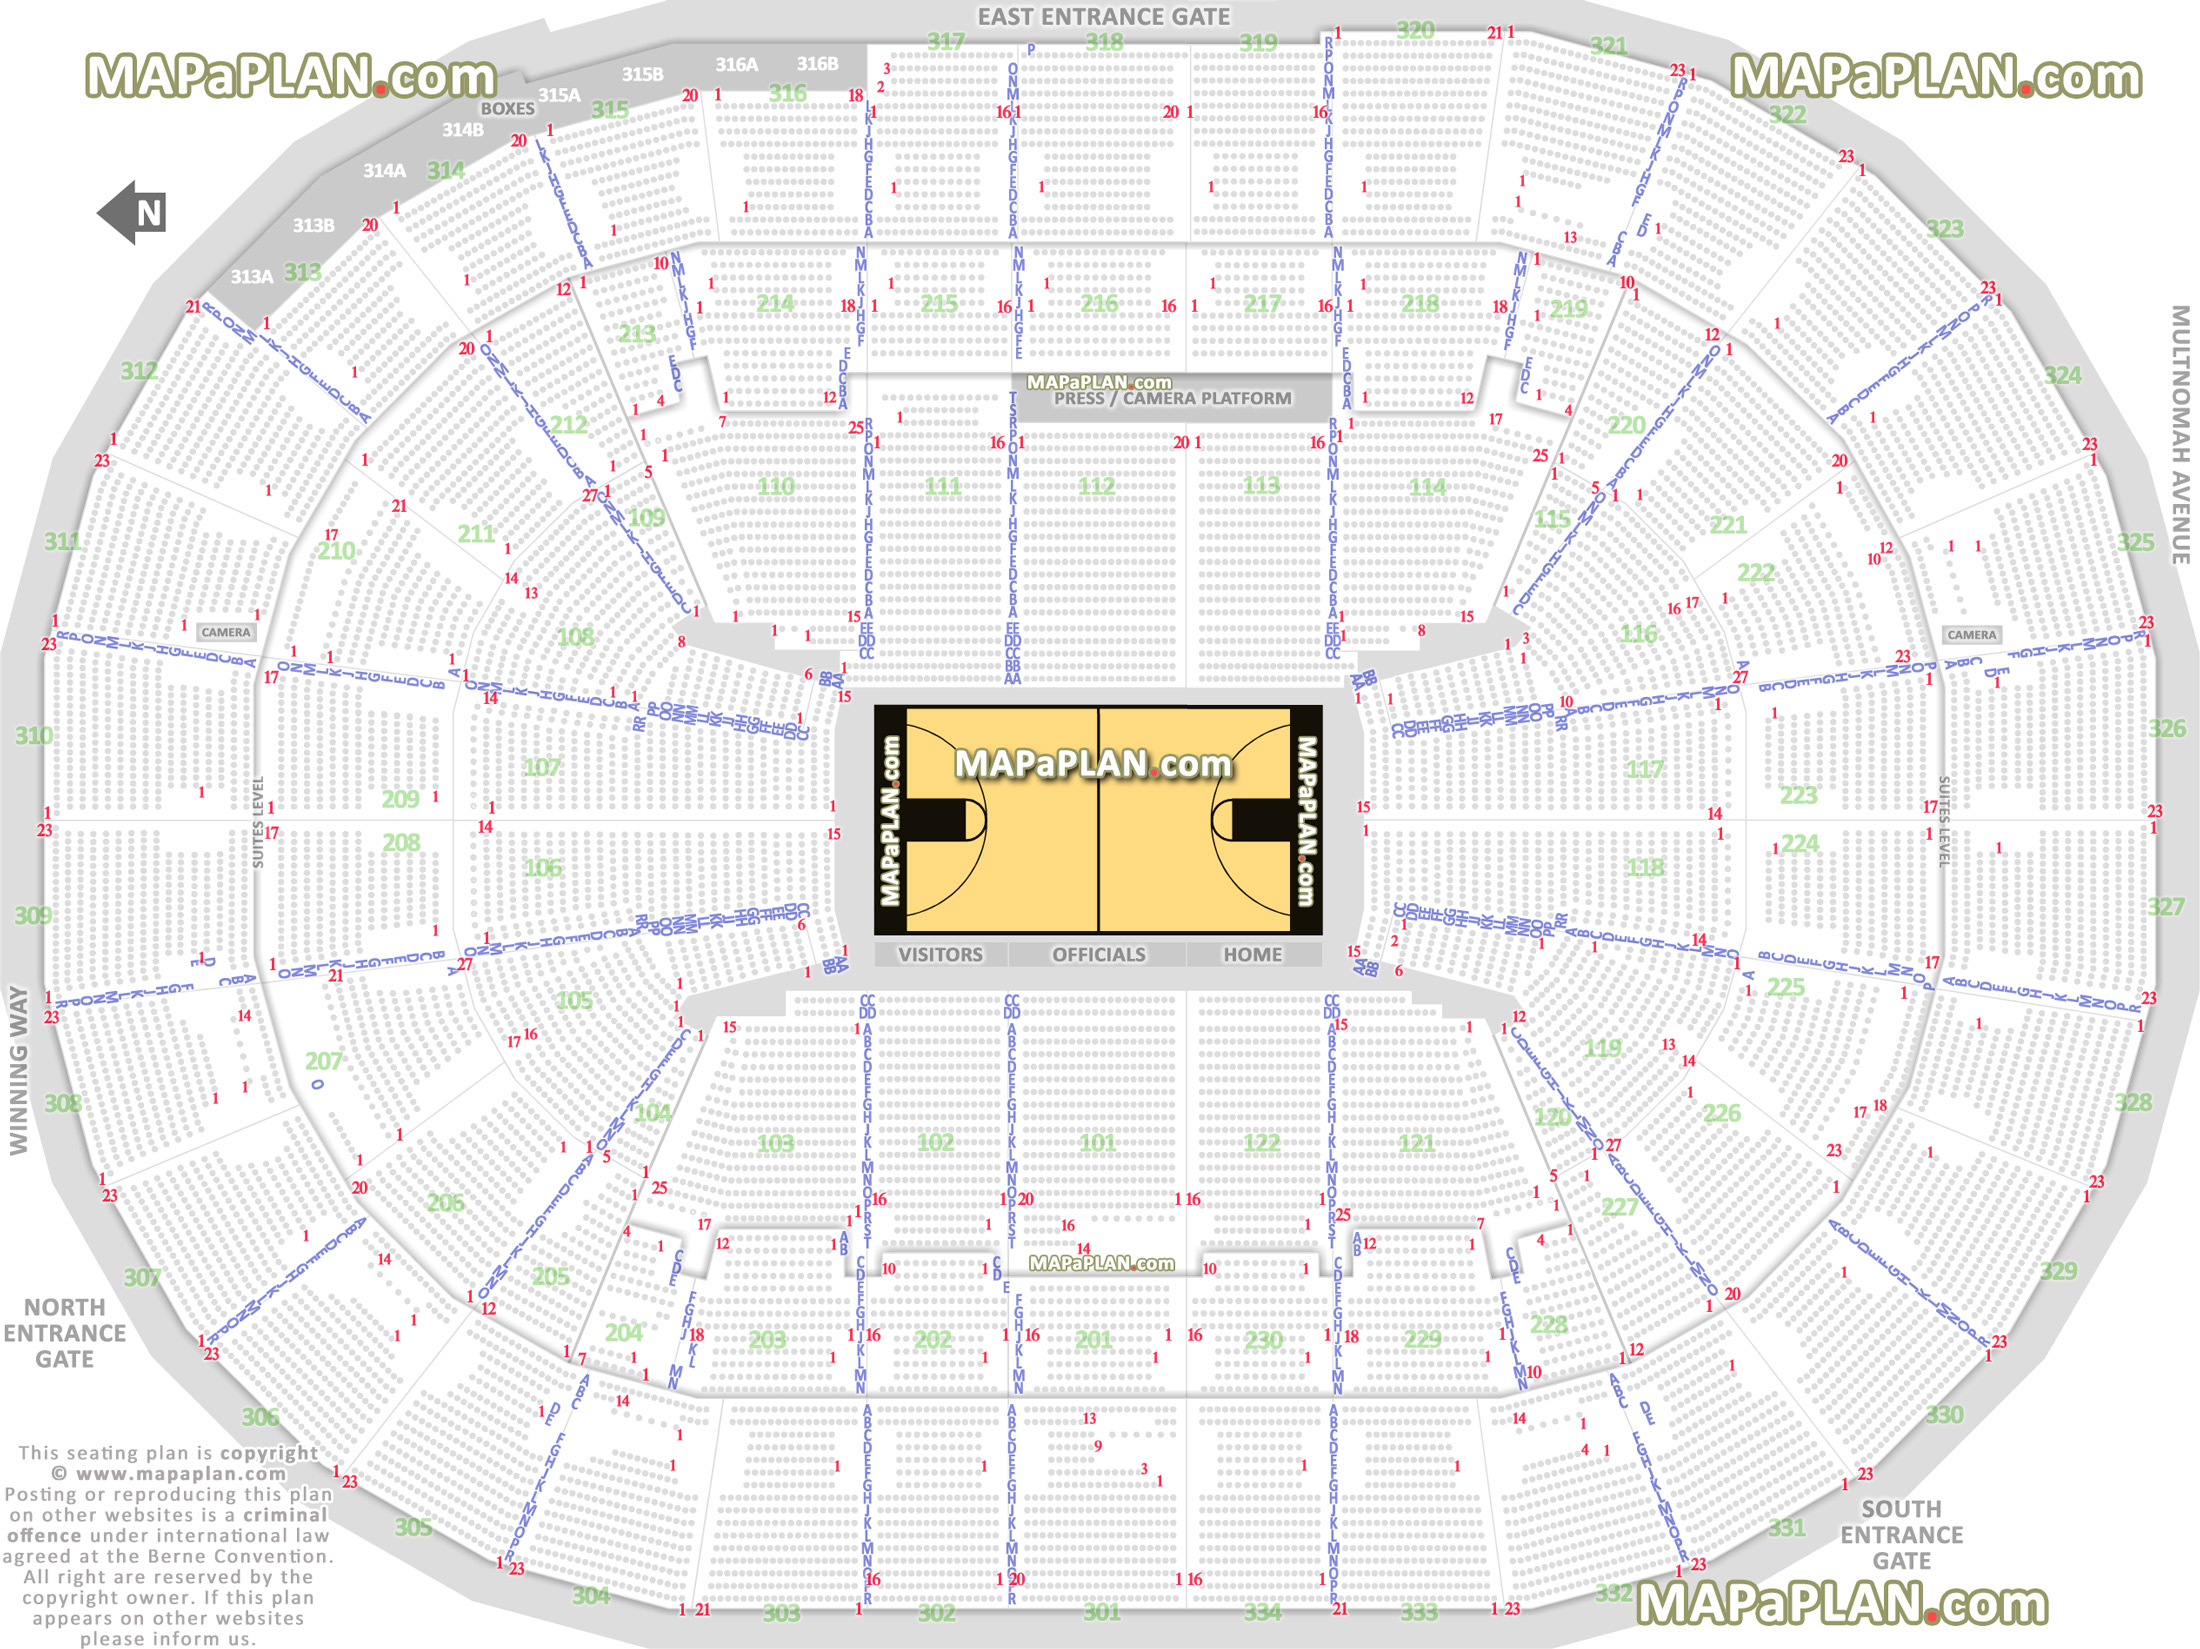 Moda Center (Rose Garden Arena) Portland Trail Blazers NBA basketball